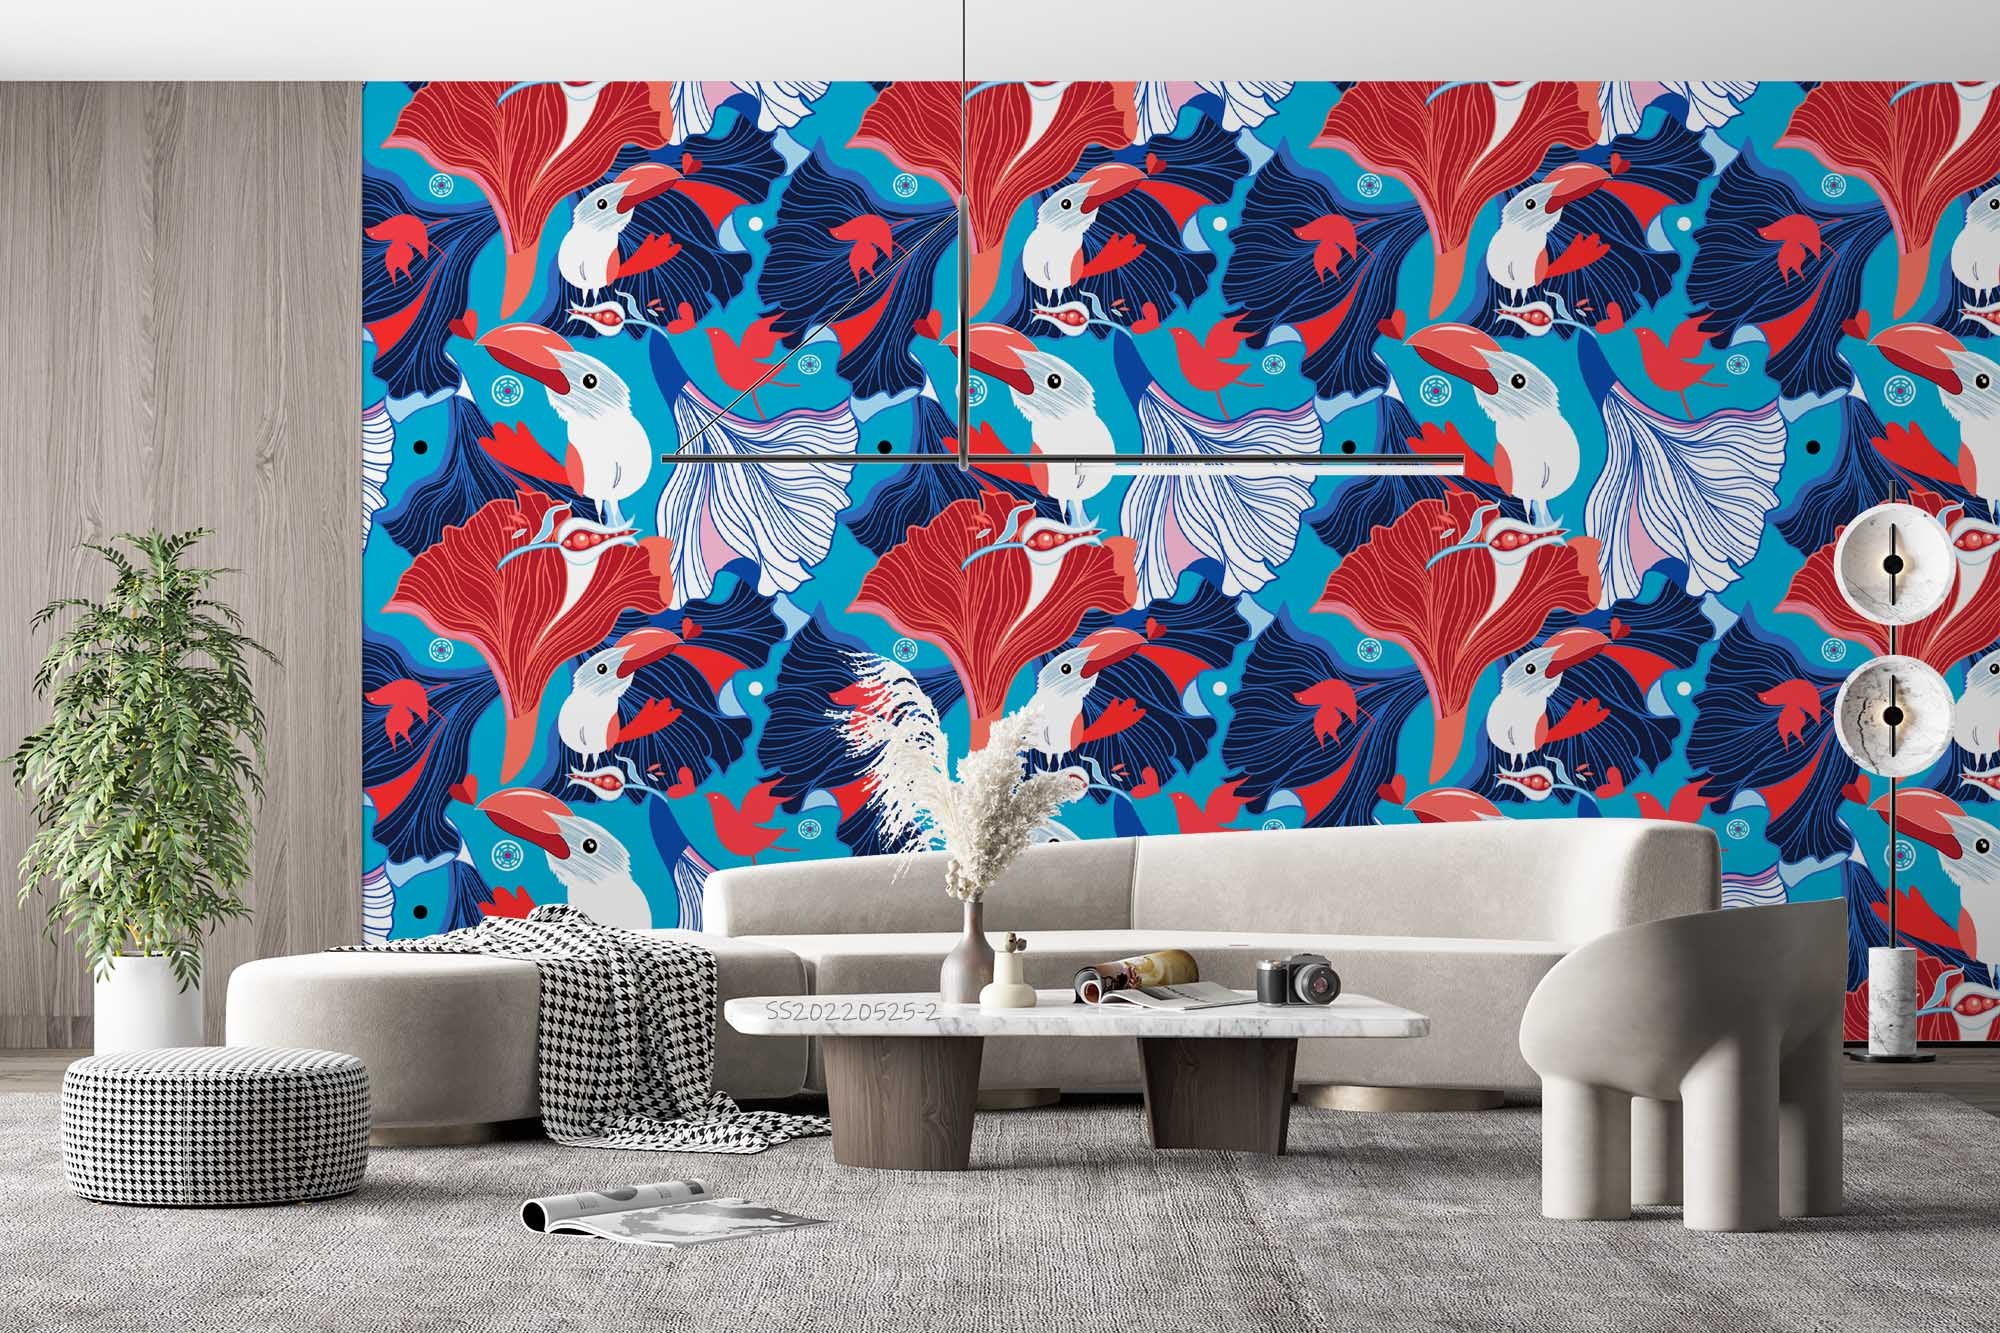 3D  Abstract Bird Pattern Blue Background Wall Mural Wallpaper GD 127- Jess Art Decoration